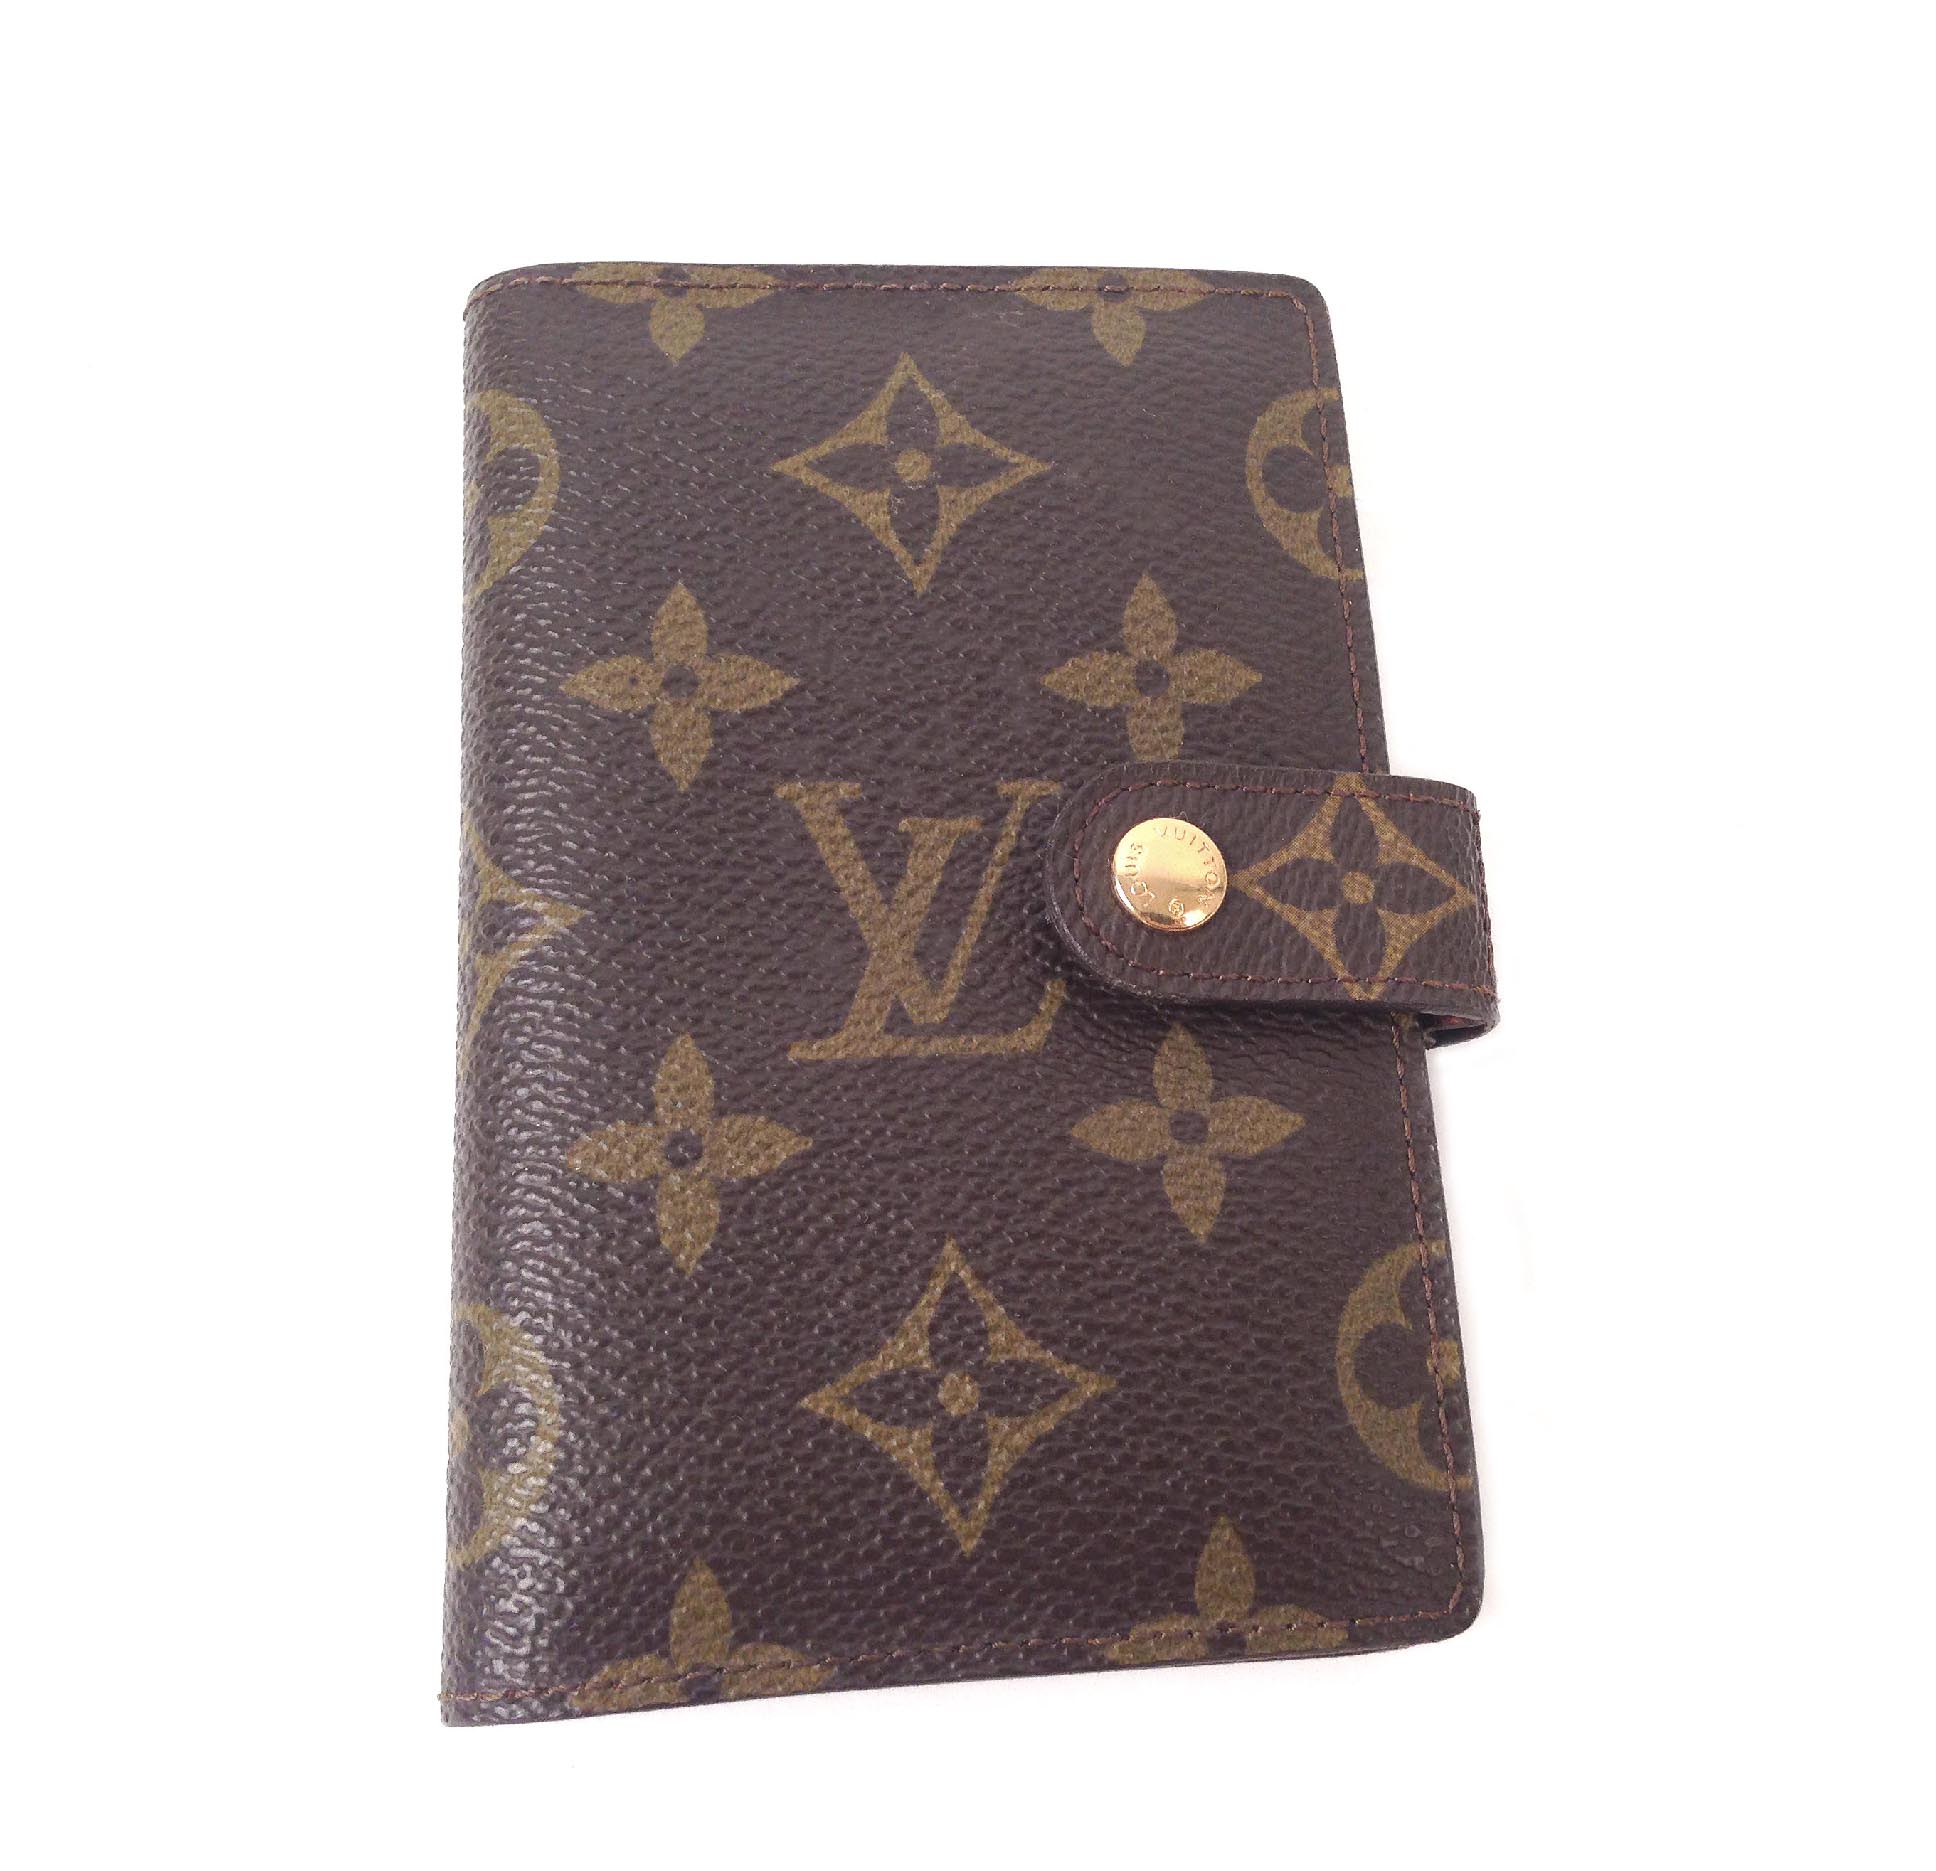 Louis Vuitton Address Phone & Calendar Vintage Book Wallet - Einna Sirrod